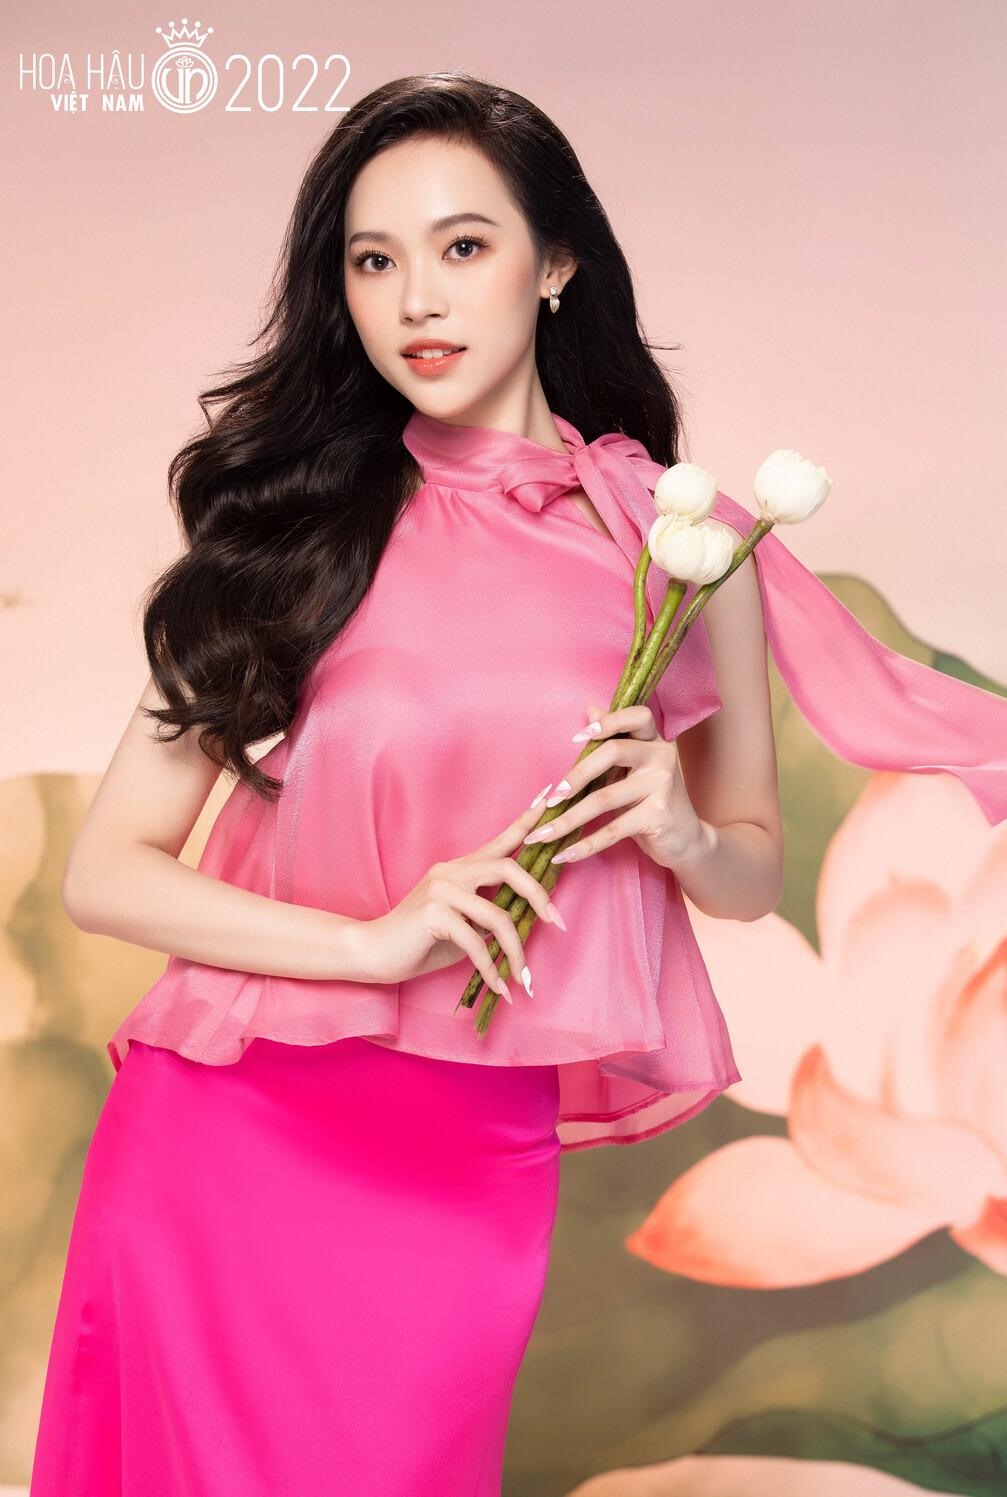 Những người đẹp có hình thể nóng bỏng nhất Hoa hậu Việt Nam 2022 - Ảnh 9.